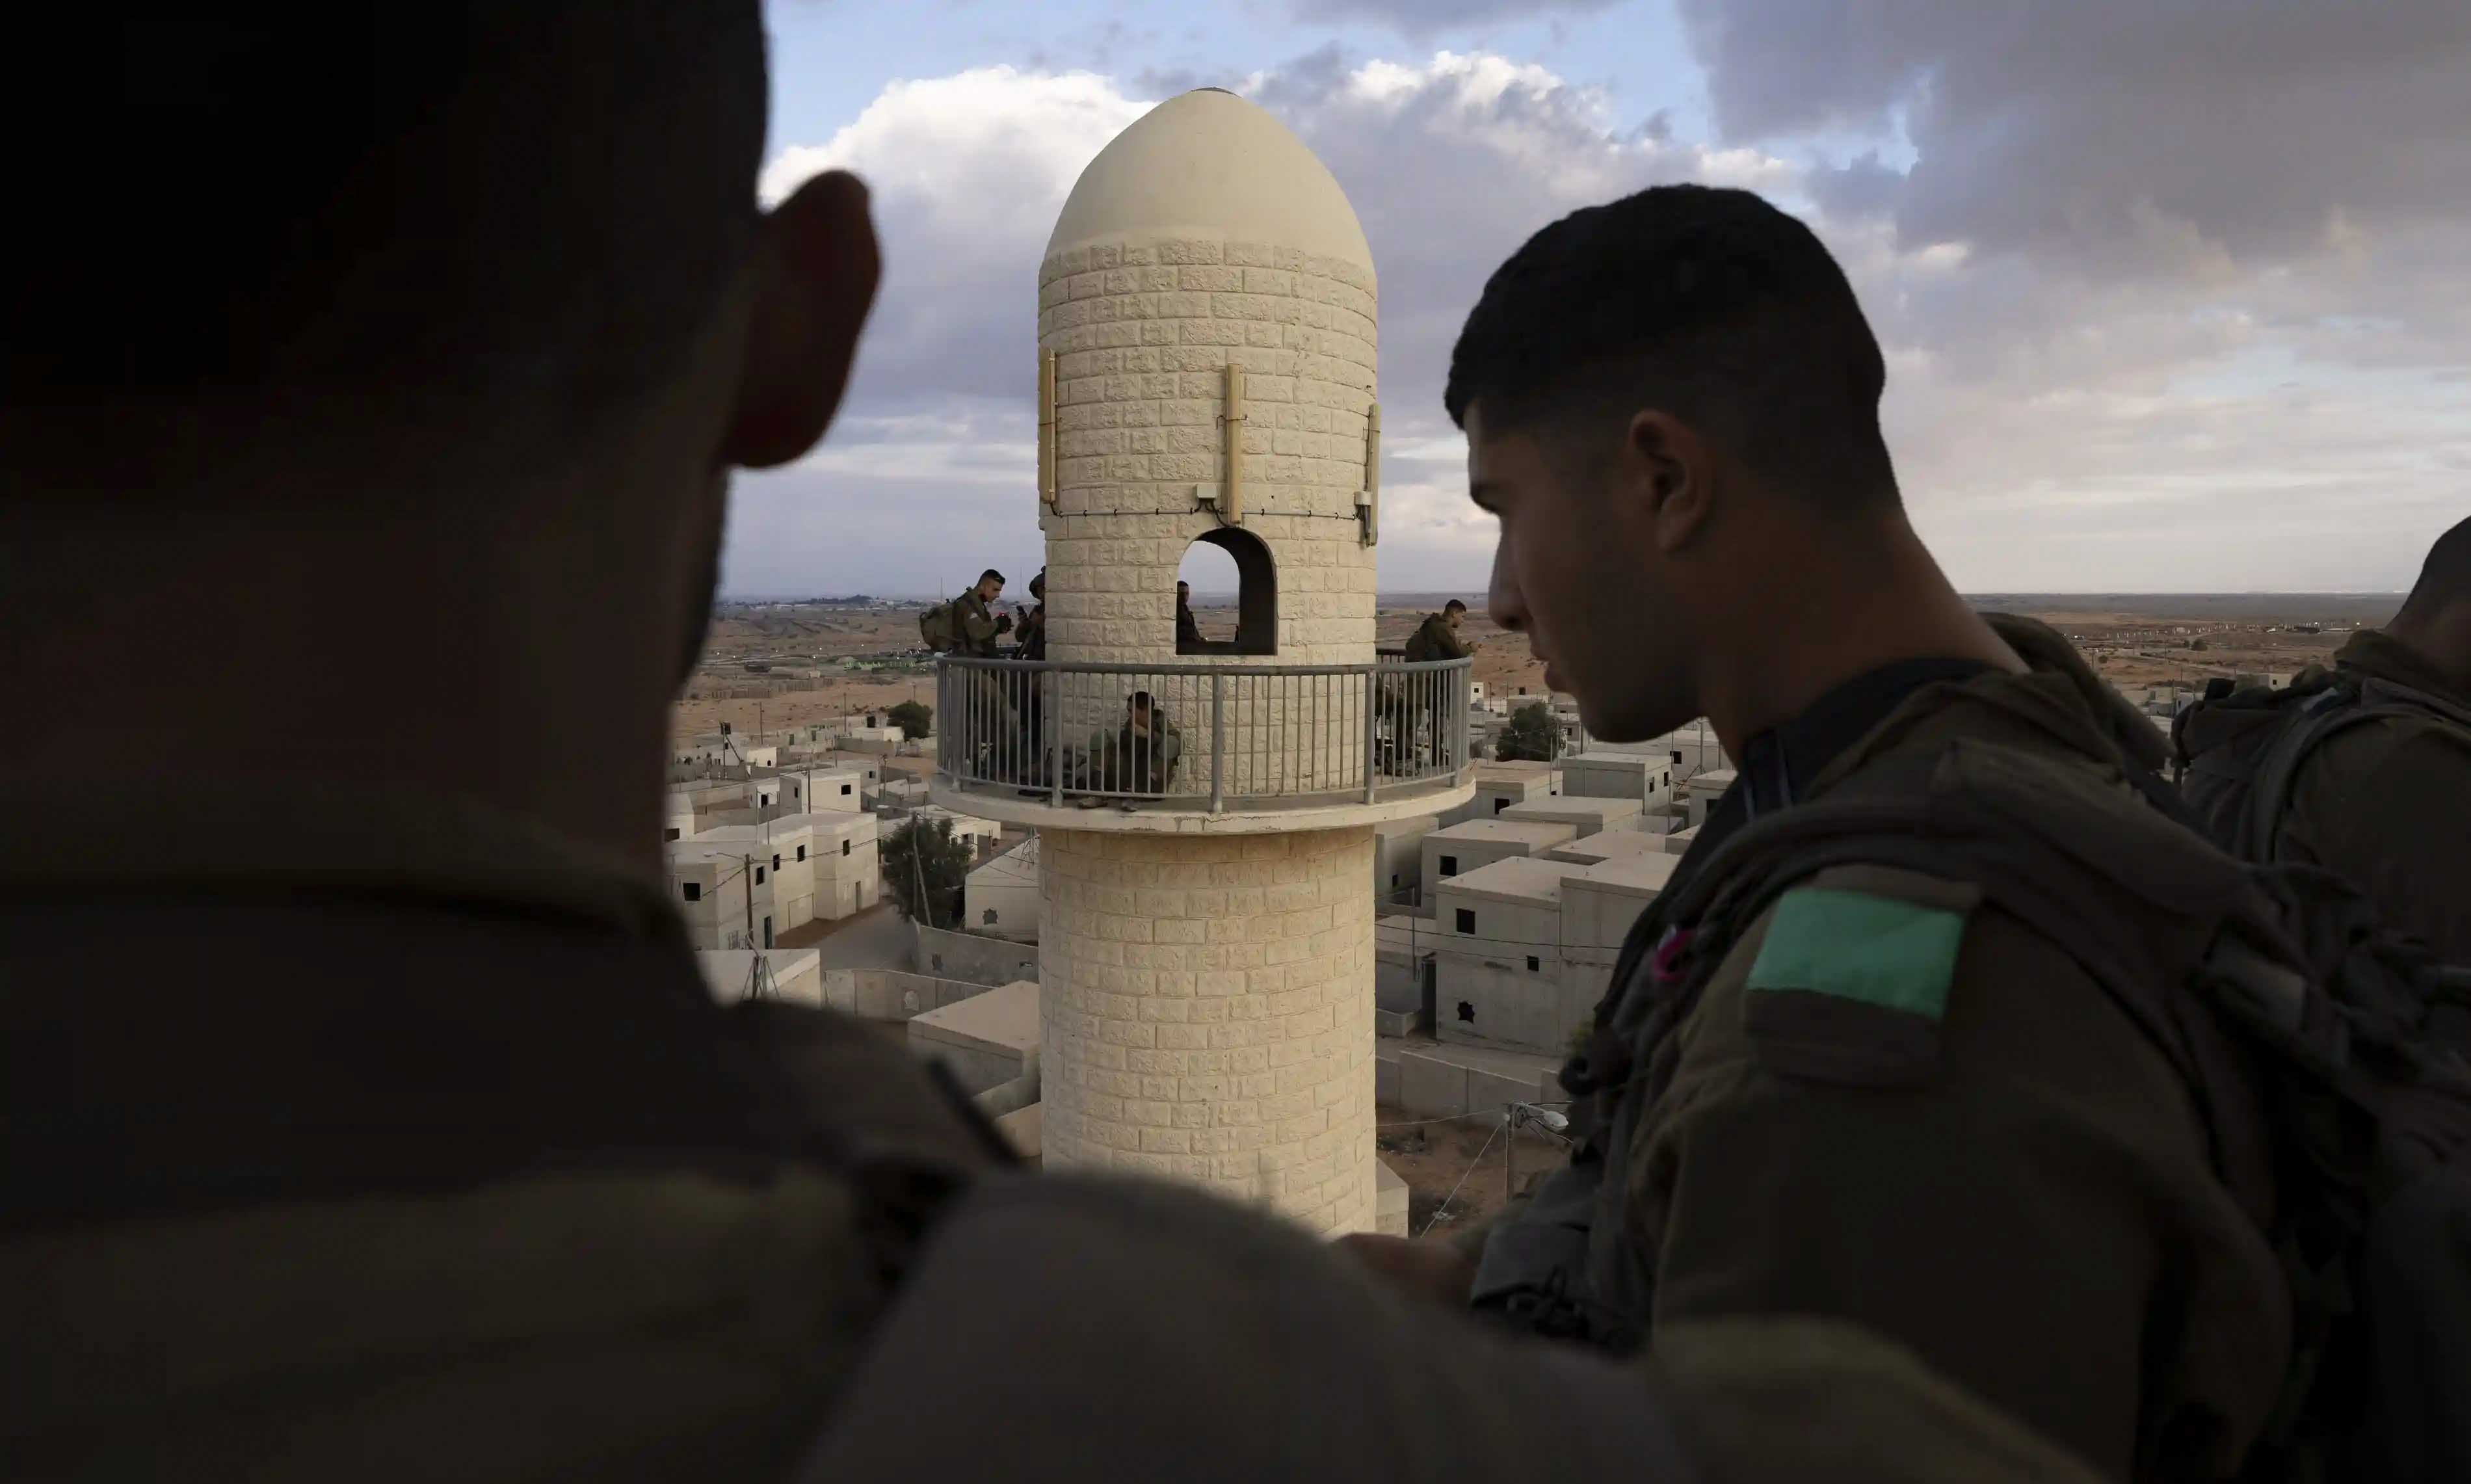 một số binh lính ví nơi đây như “Mini Gaza” – mô phỏng khu đô thị gồm 500 toà nhà và những con hẻm nhỏ trang trí bằng hình ảnh các những chiến binh bị giết hại. 